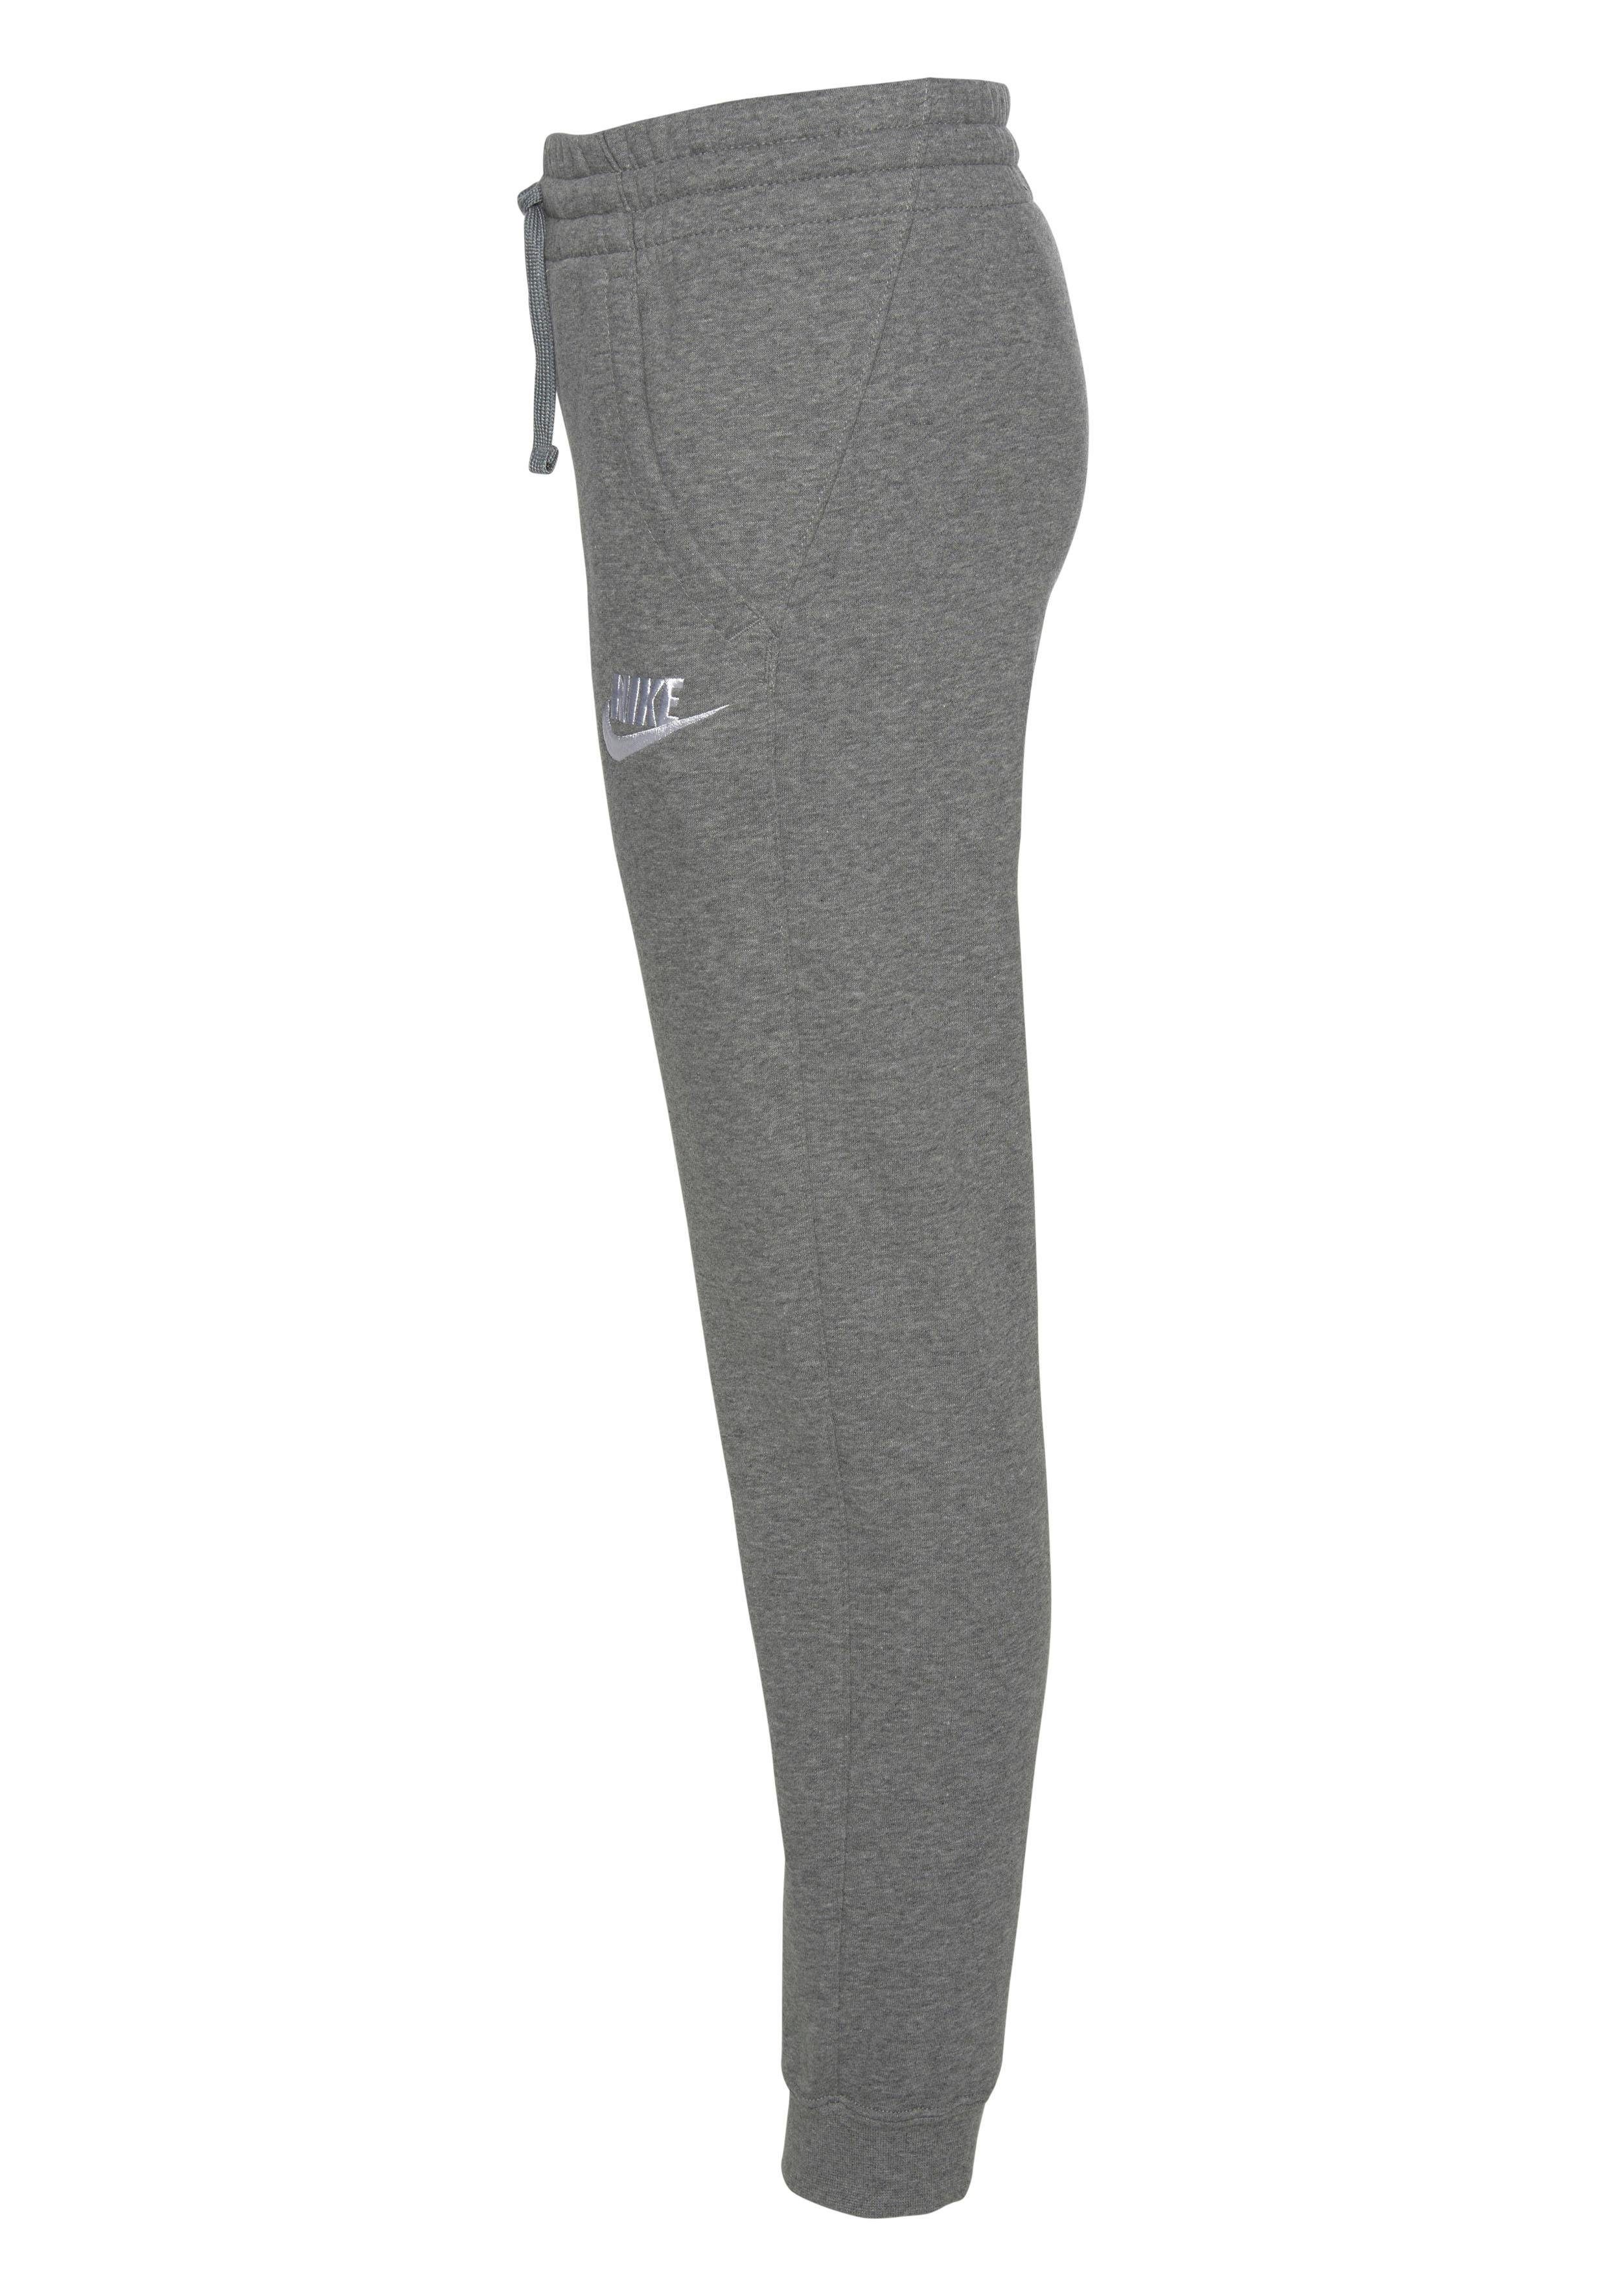 CLUB Sportswear FLEECE grau-meliert PANT JOGGER Jogginghose NSW Nike B